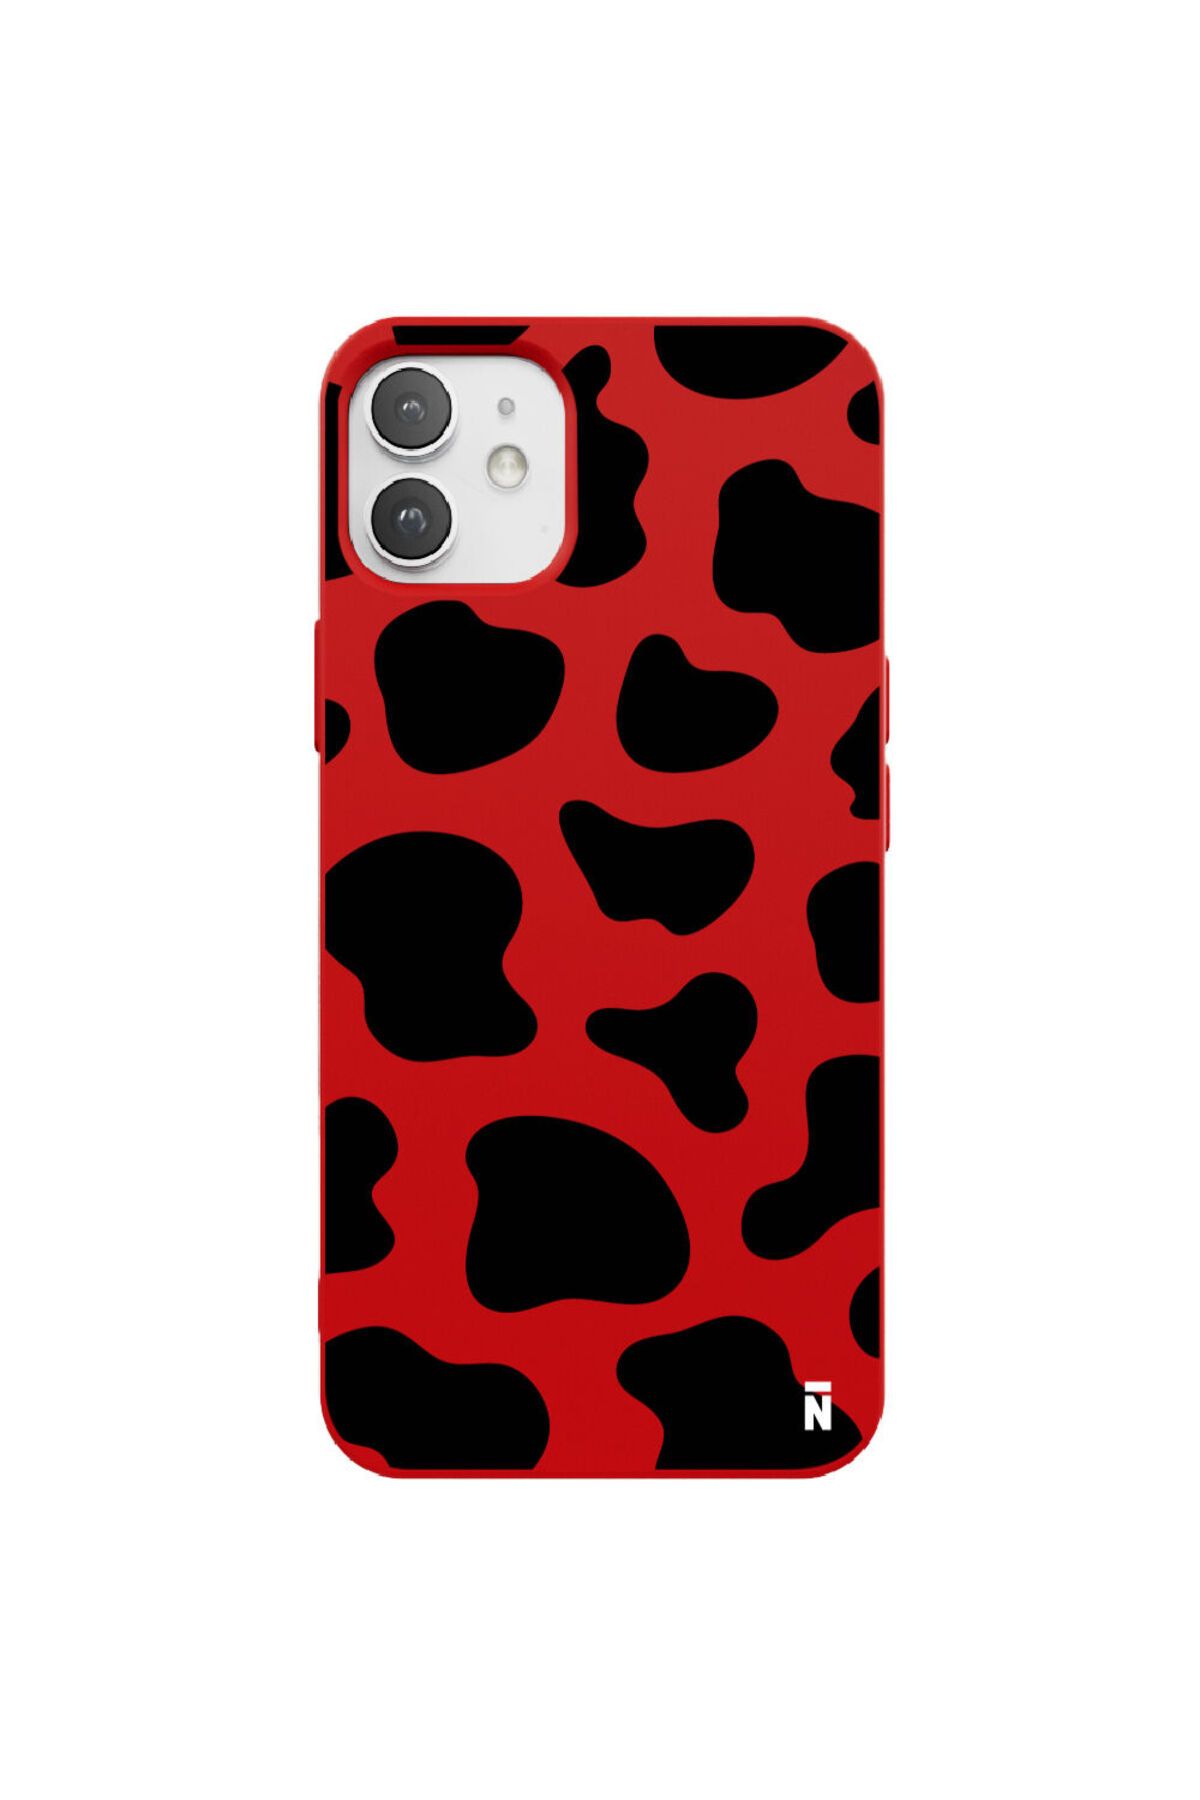 Casen iPhone 12 Mini Silikon Özel Tasarım Dalmaçya Benekli Tasarım Kırmızı Renkli Telefon Kılıfı